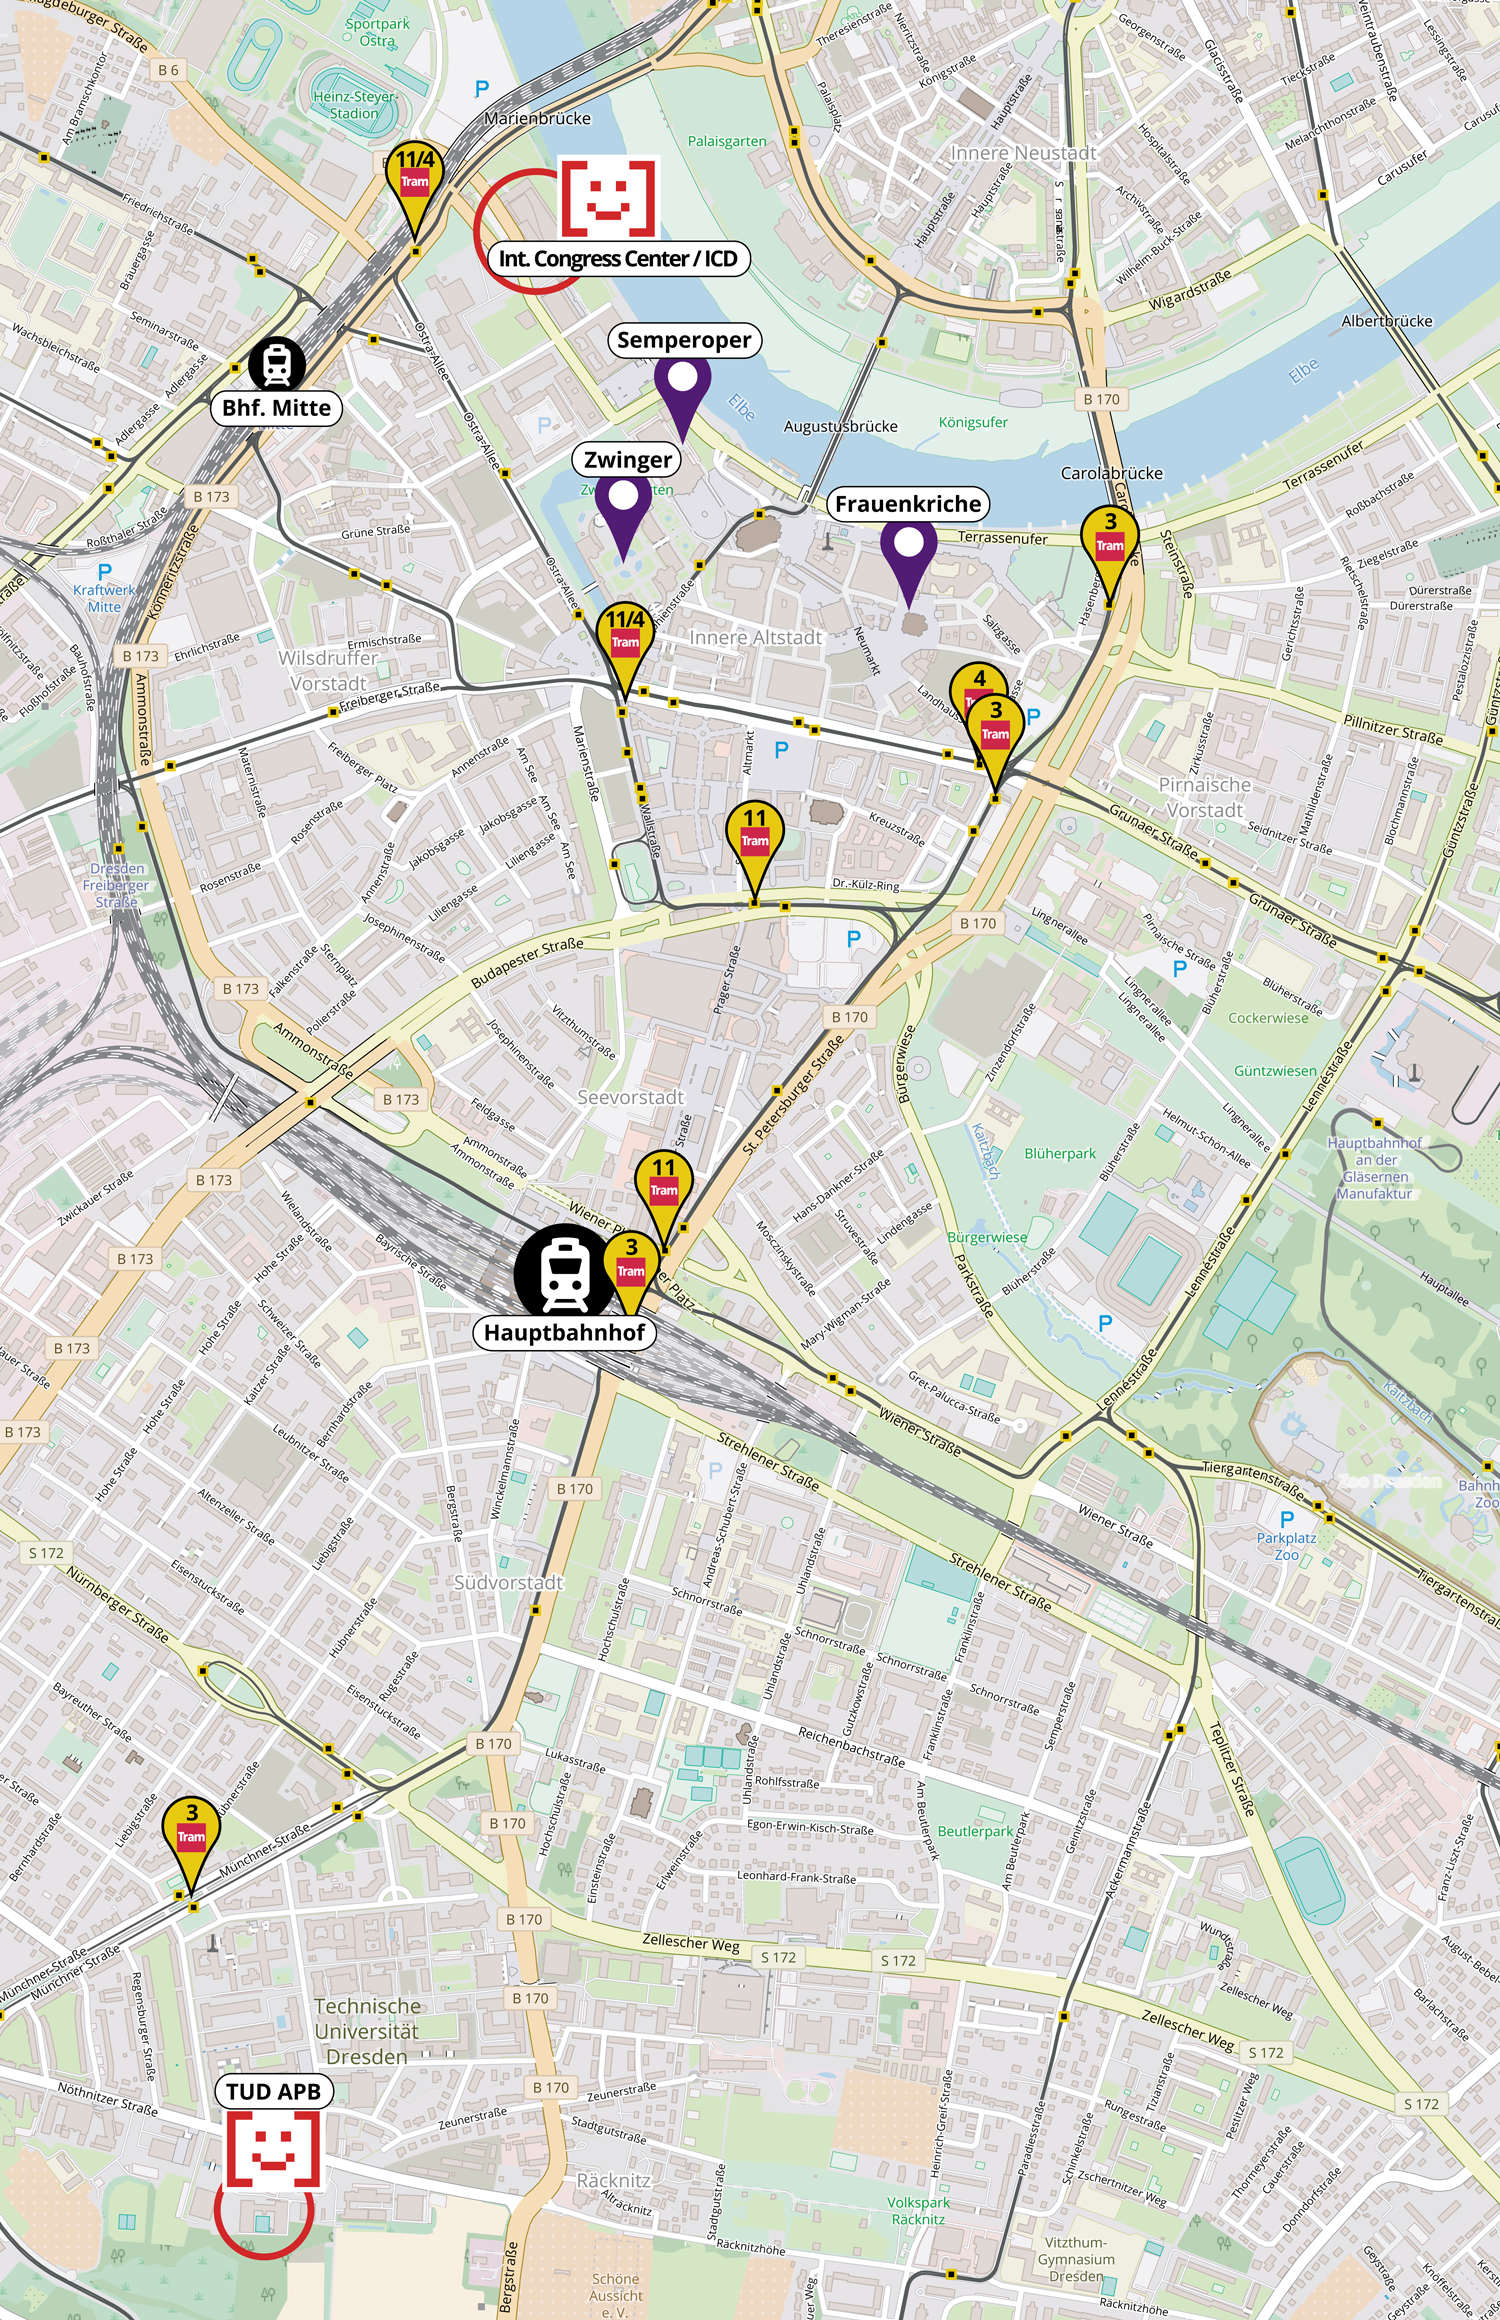 Stadtkarte der Dresdner Innenstadt mit Markierungen für das ICD im Norden an der Elbe und den APB im Süden. Wichtige Straßenbahnhaltestellen sind ebenfalls markiert.